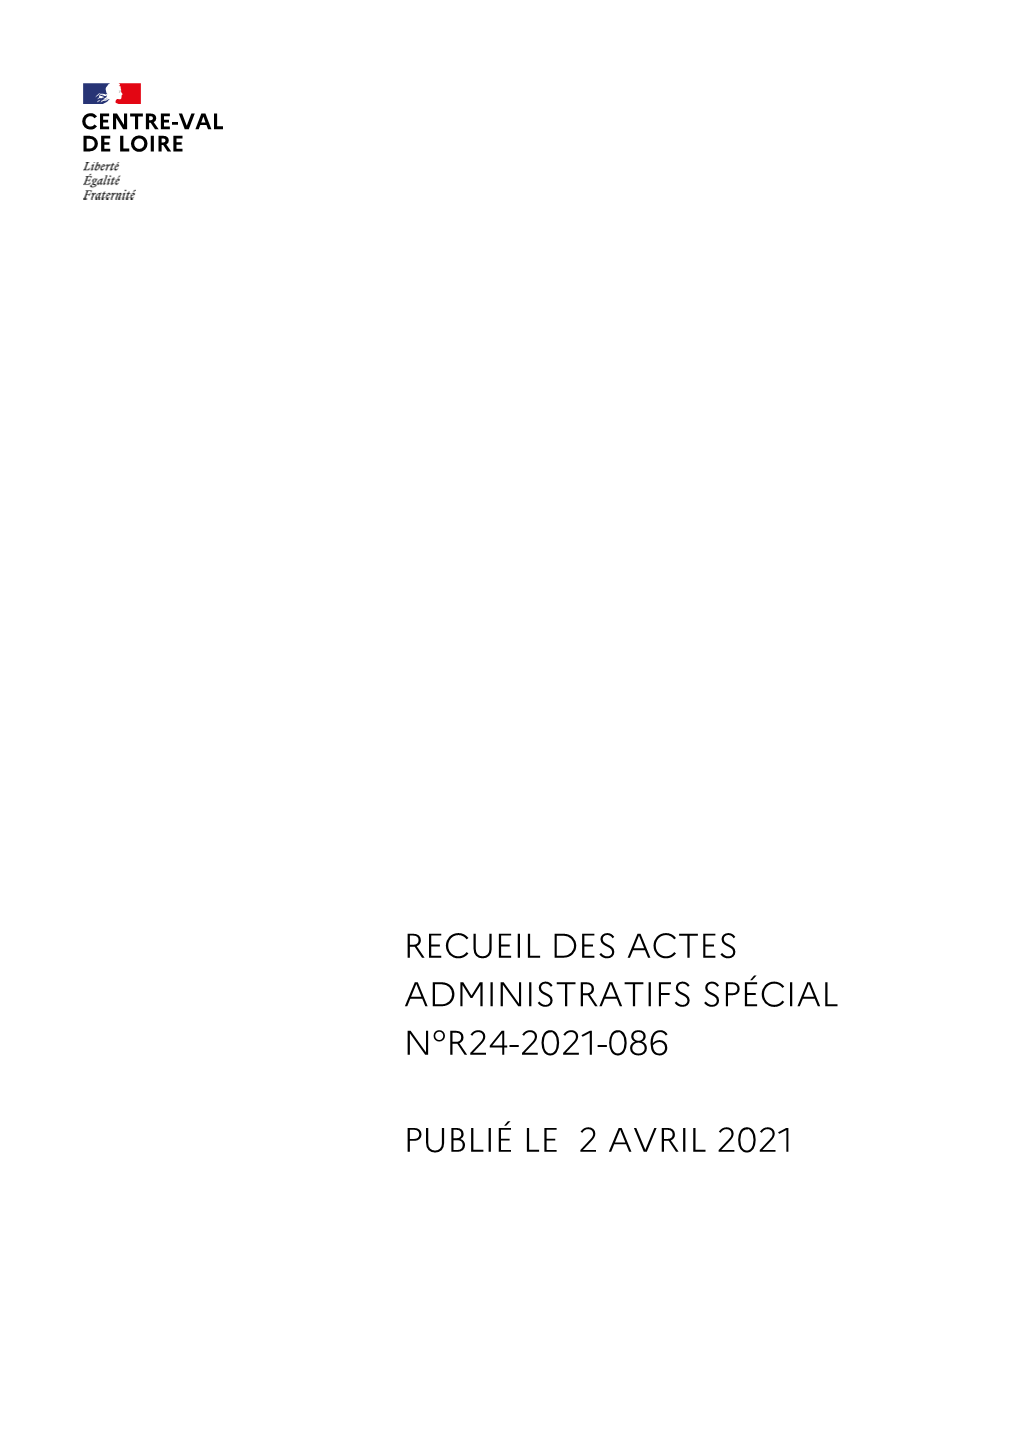 Recueil-R24-2021-086 Du 02 Avril 2021